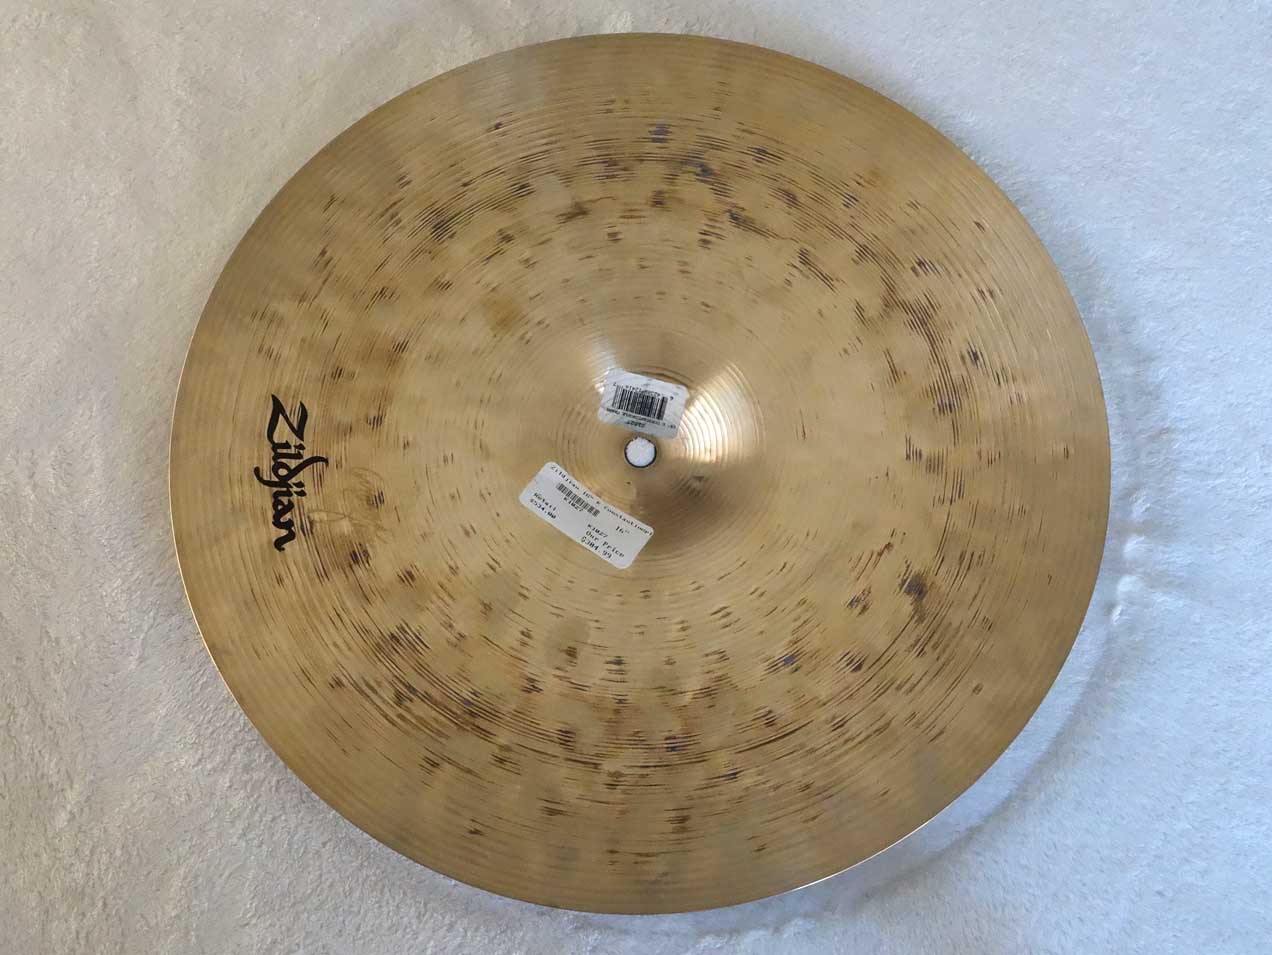 Zildjian K Constantinople 16" Crash Cymbal, w/Date Code JI = 2009